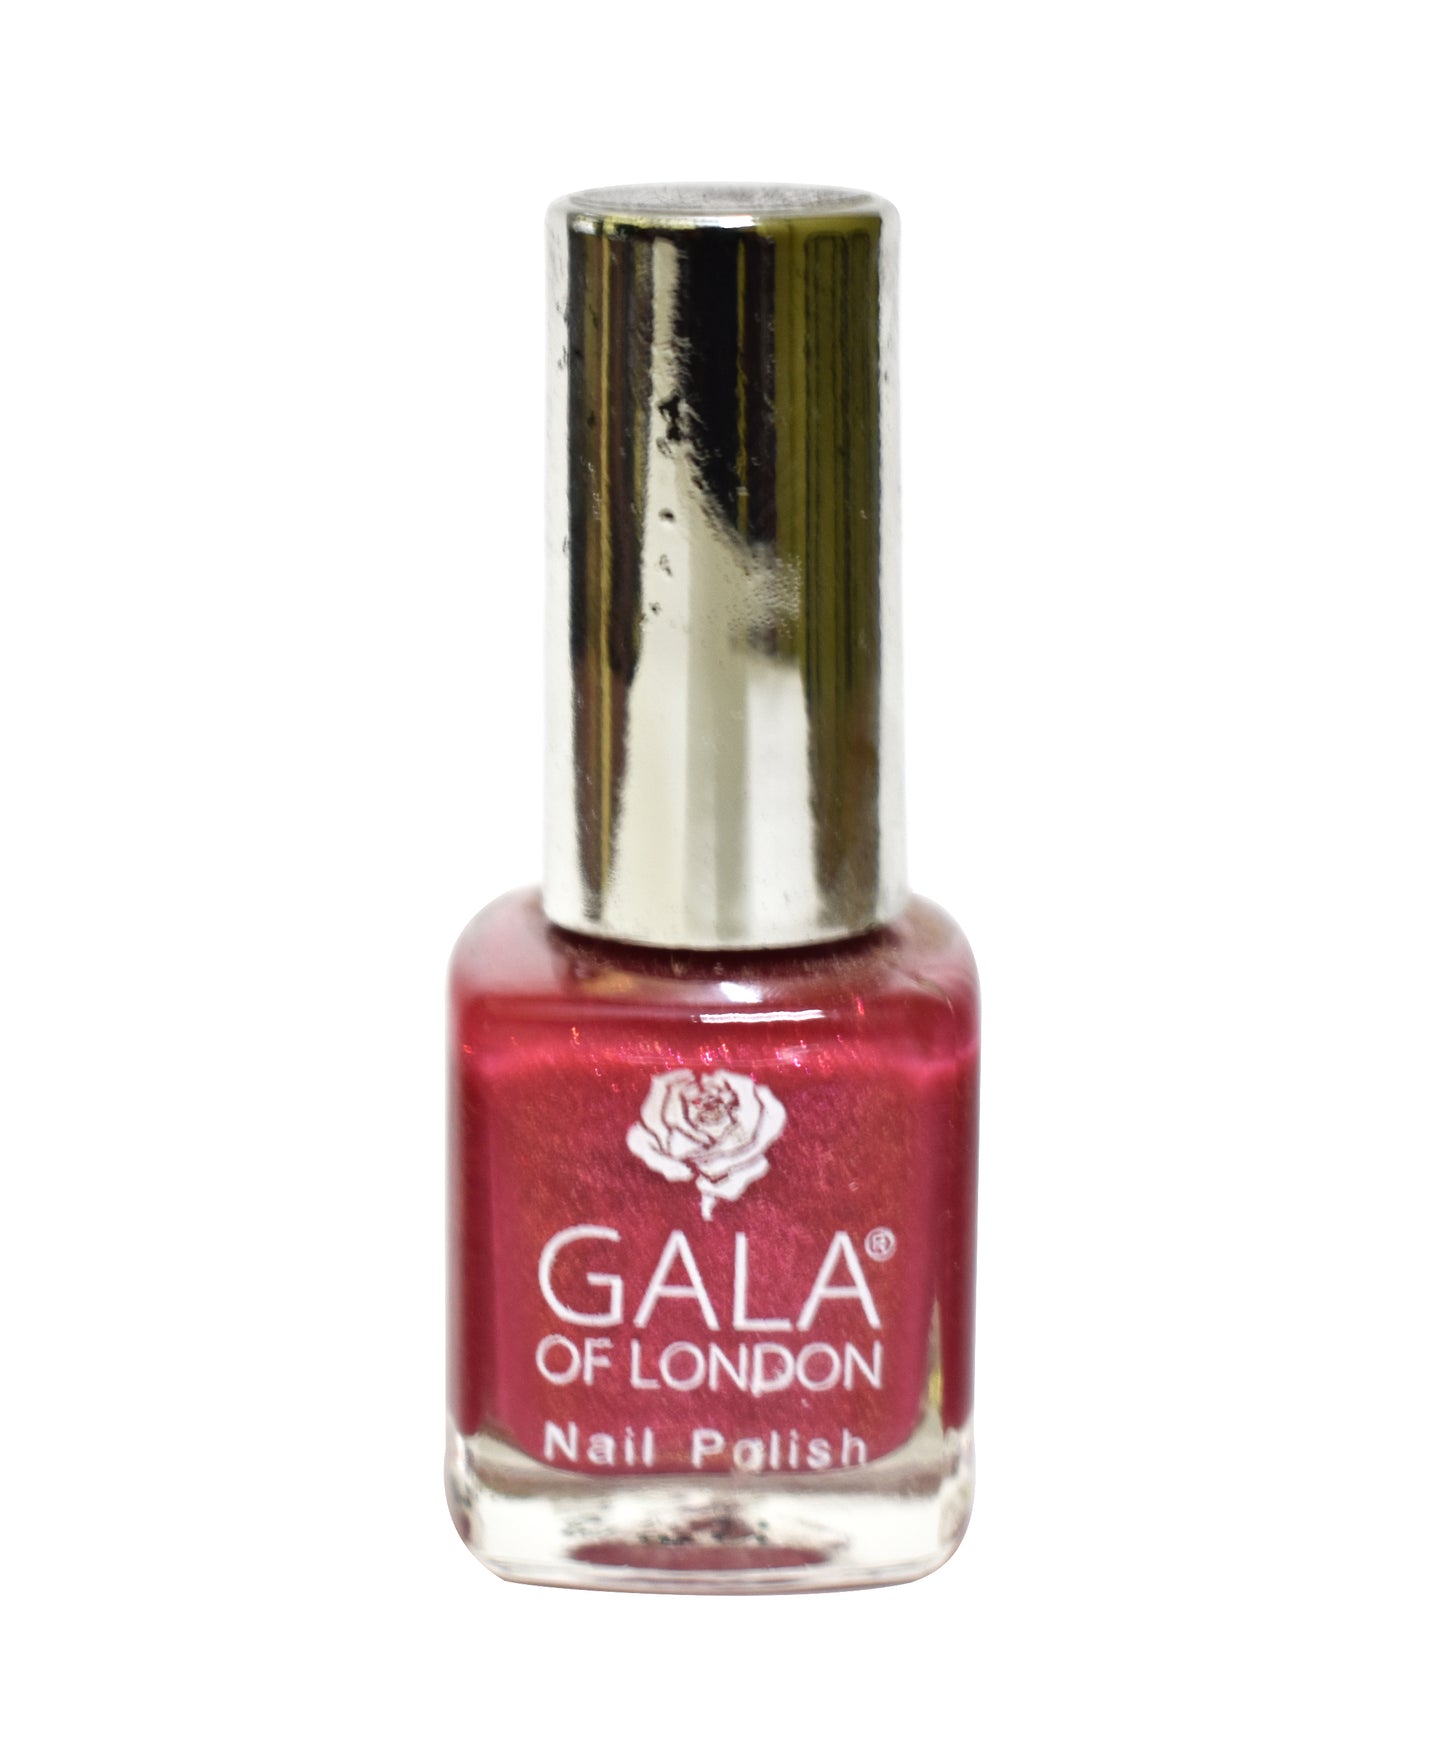 Gala of London Bridal Nail Polish - Glossy Pink BR19